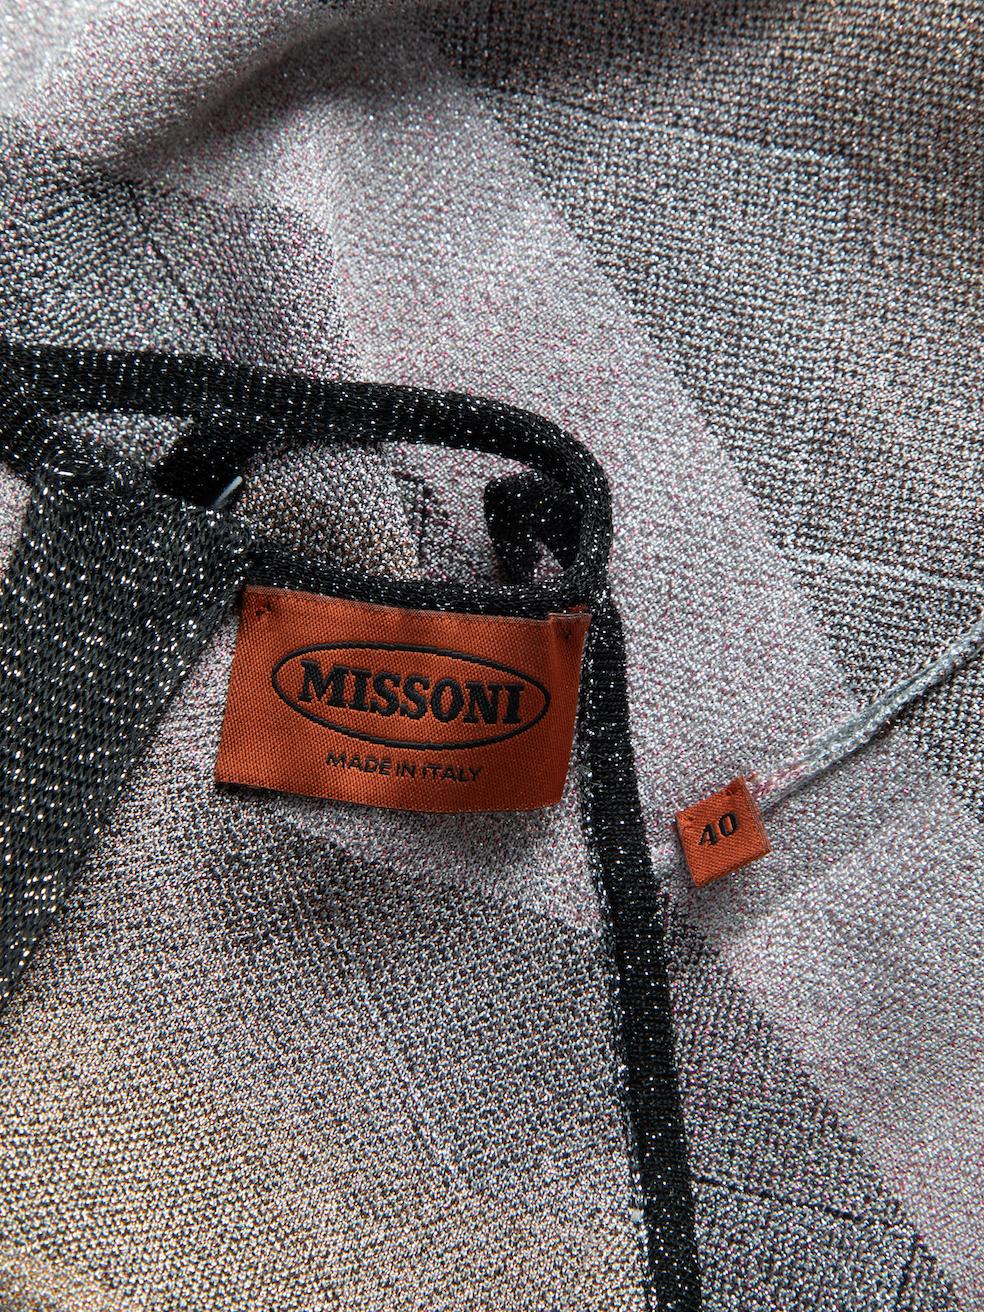 Pre-Loved Missoni Women's Multicolour Metallic Chevron Striped Halter Dress 1